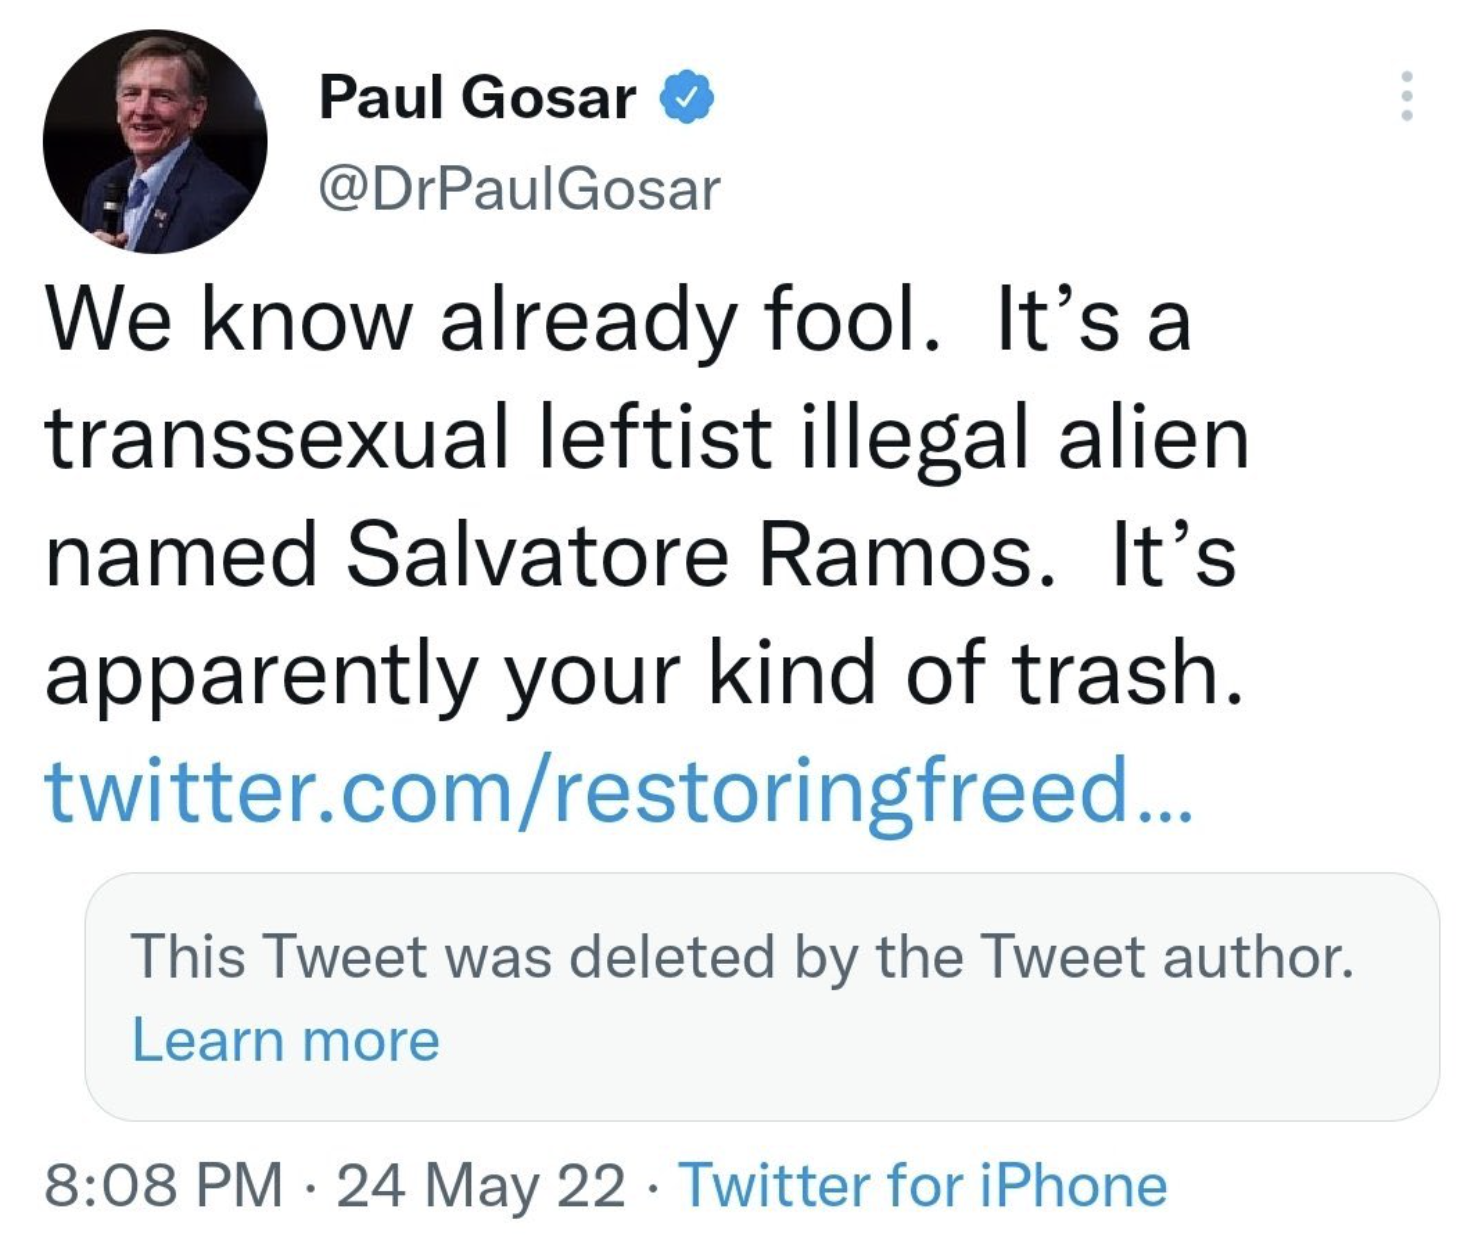 Paul Gosar deleted tweet